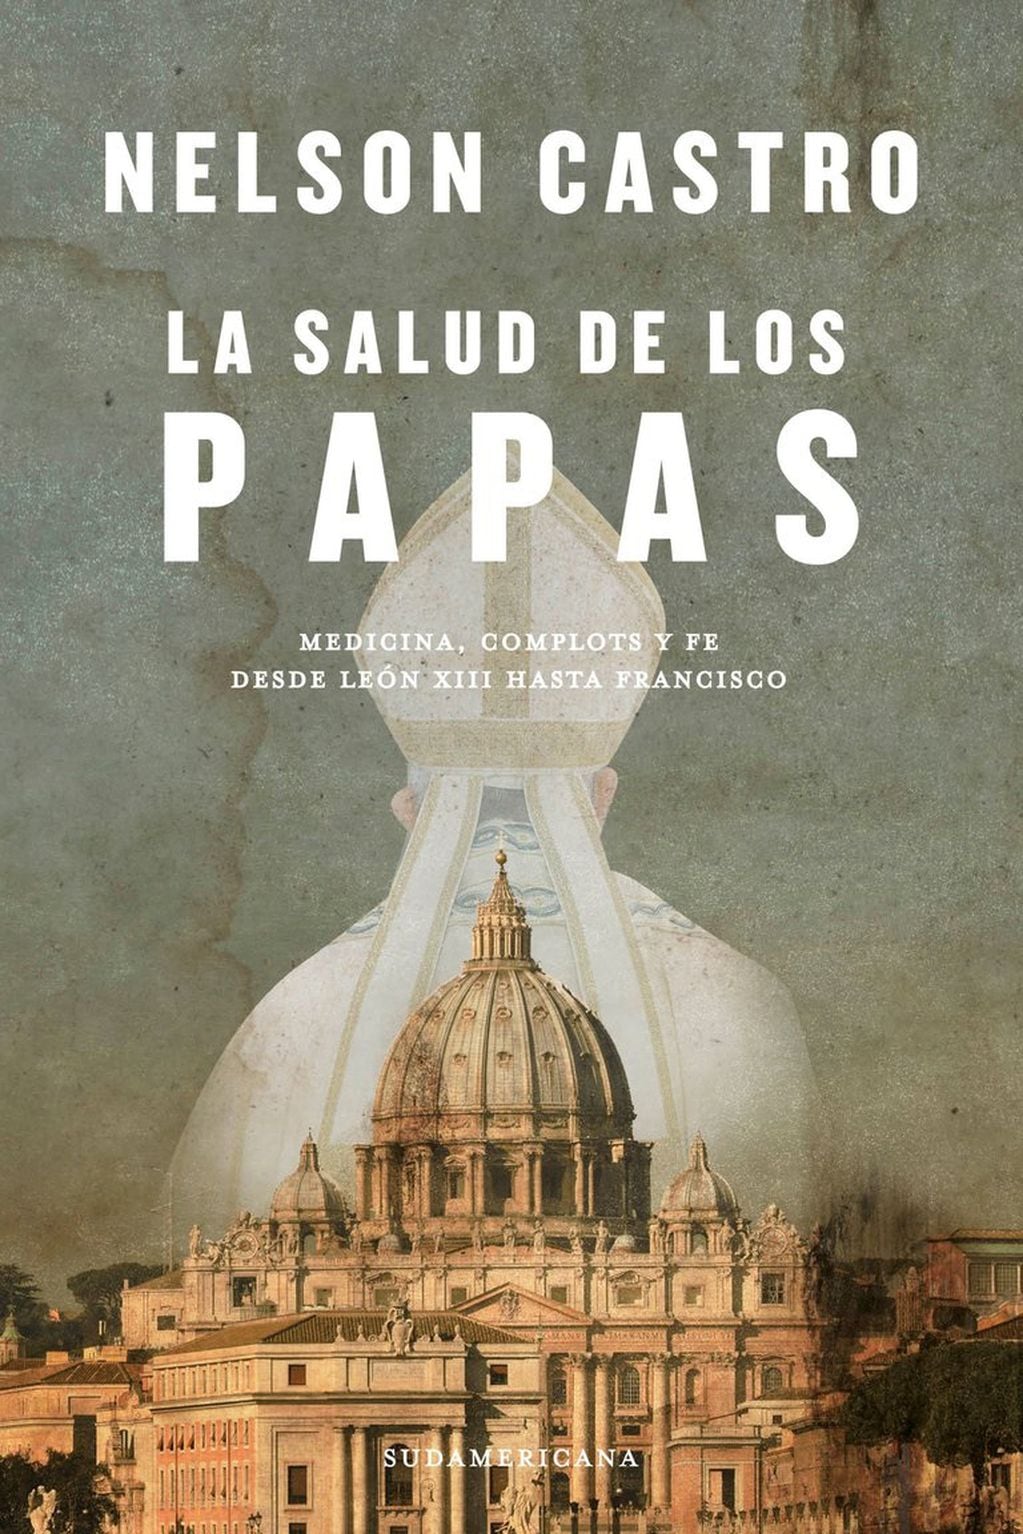 "La salud de los papas", el libro del periodista Nelson Castro